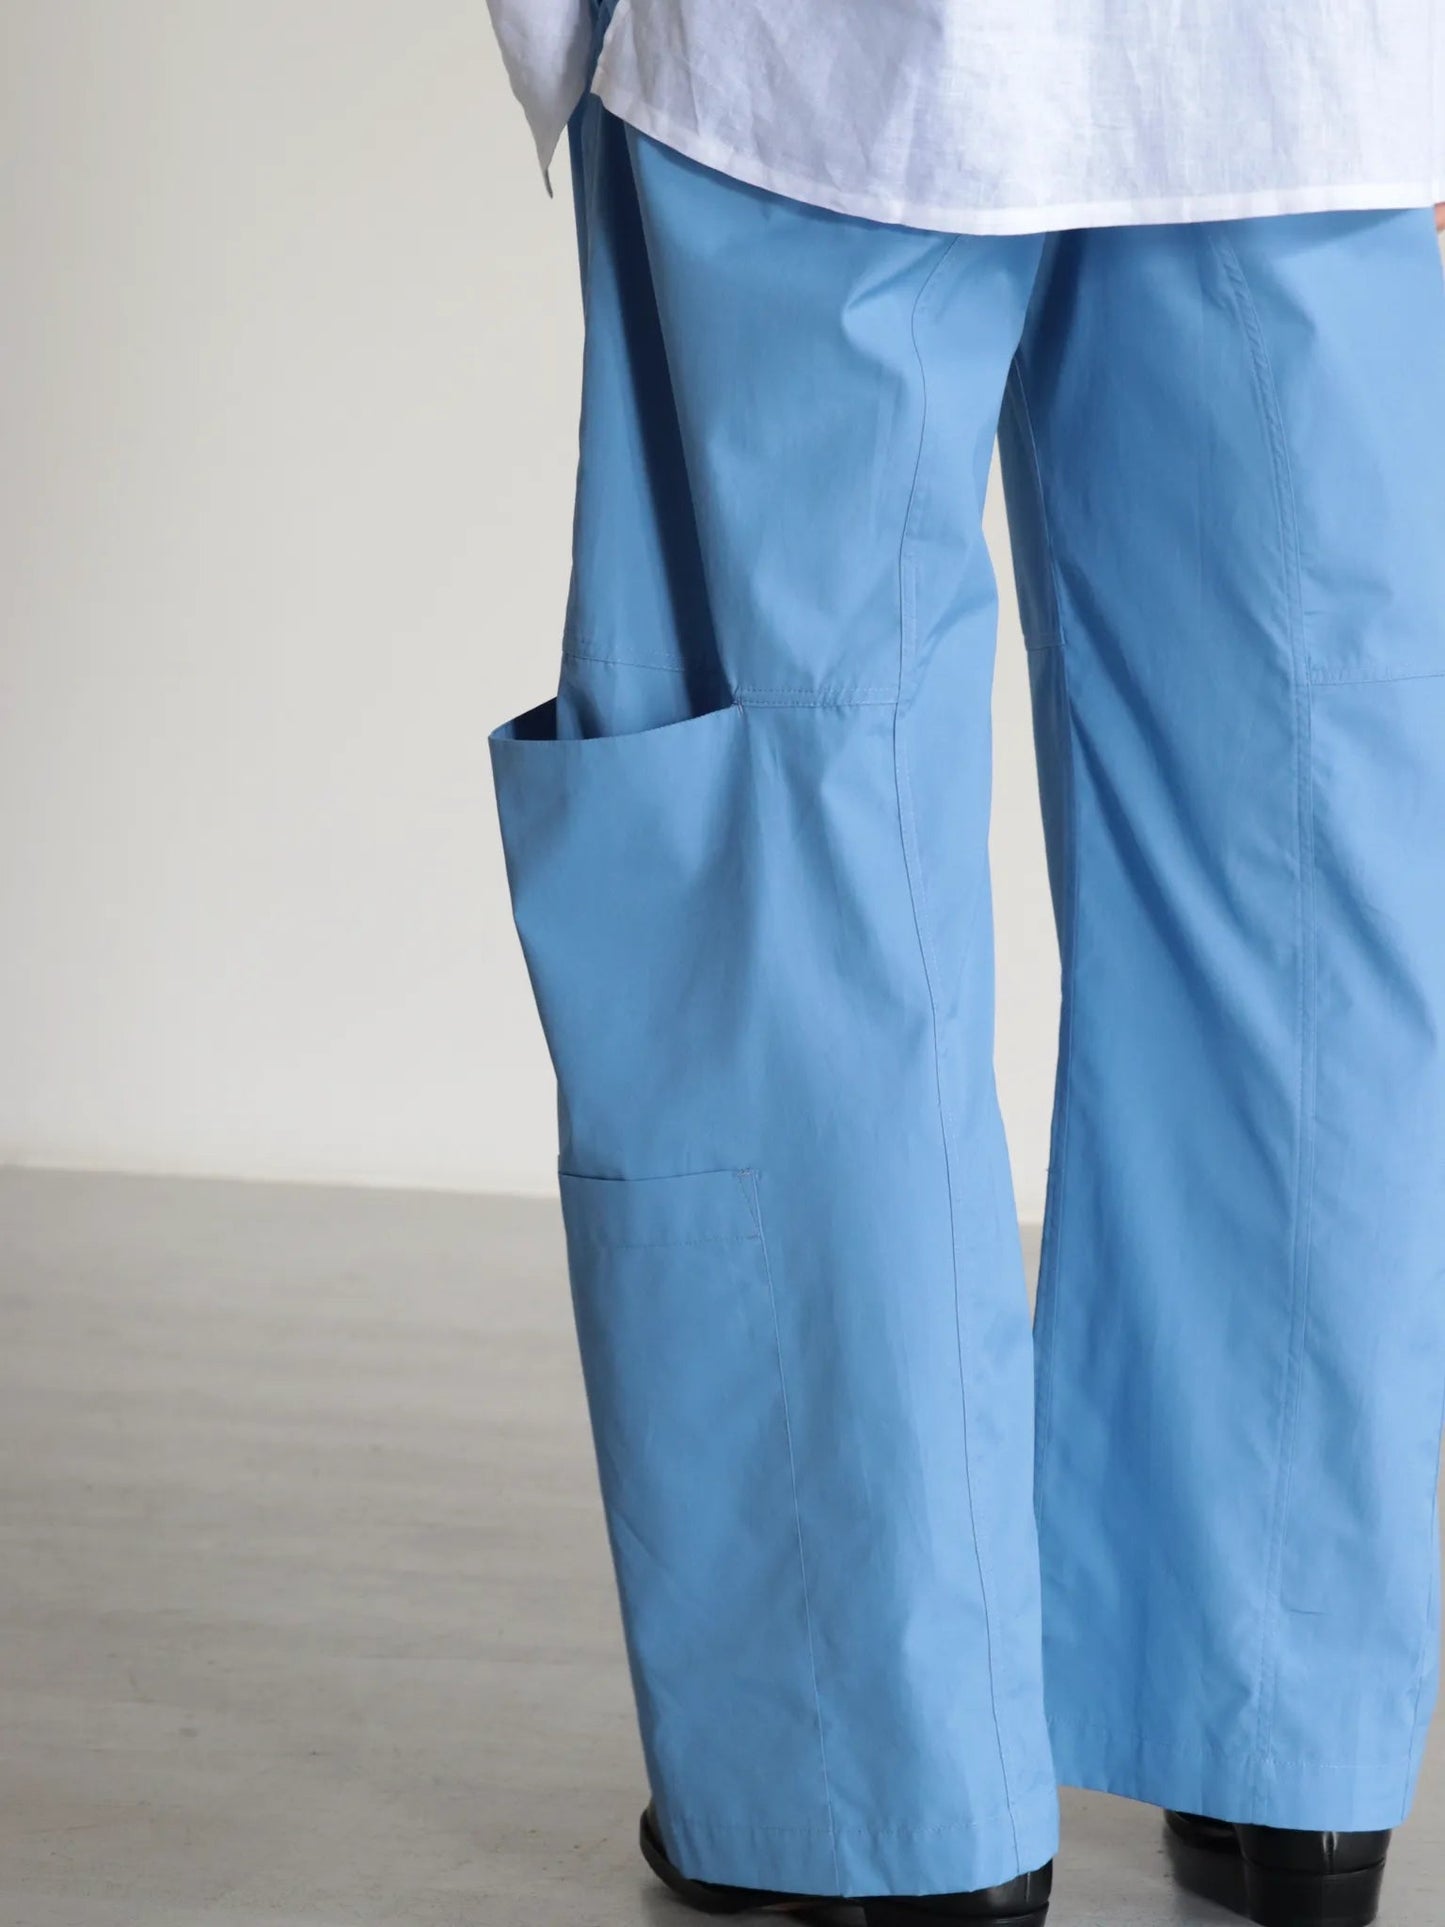 sagenation-parachute-trousers-azure-blue-4